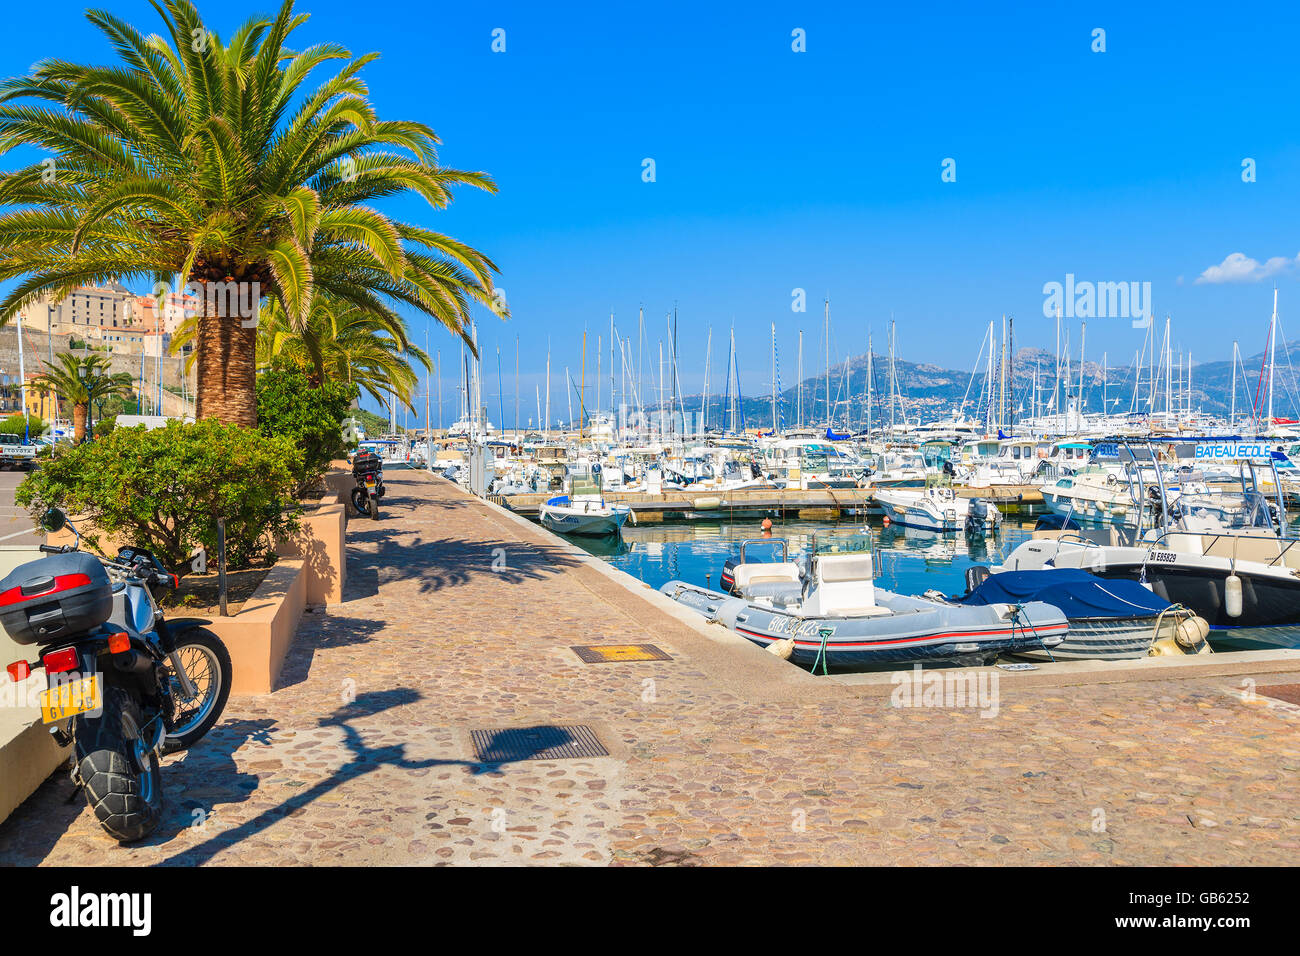 CALVI, Korsika - 28. Juni 2015: Scooter parkte auf der Strandpromenade mit Palmen im Hafen von Calvi. Diese Stadt hat luxuriöse Yachthafen Stockfoto